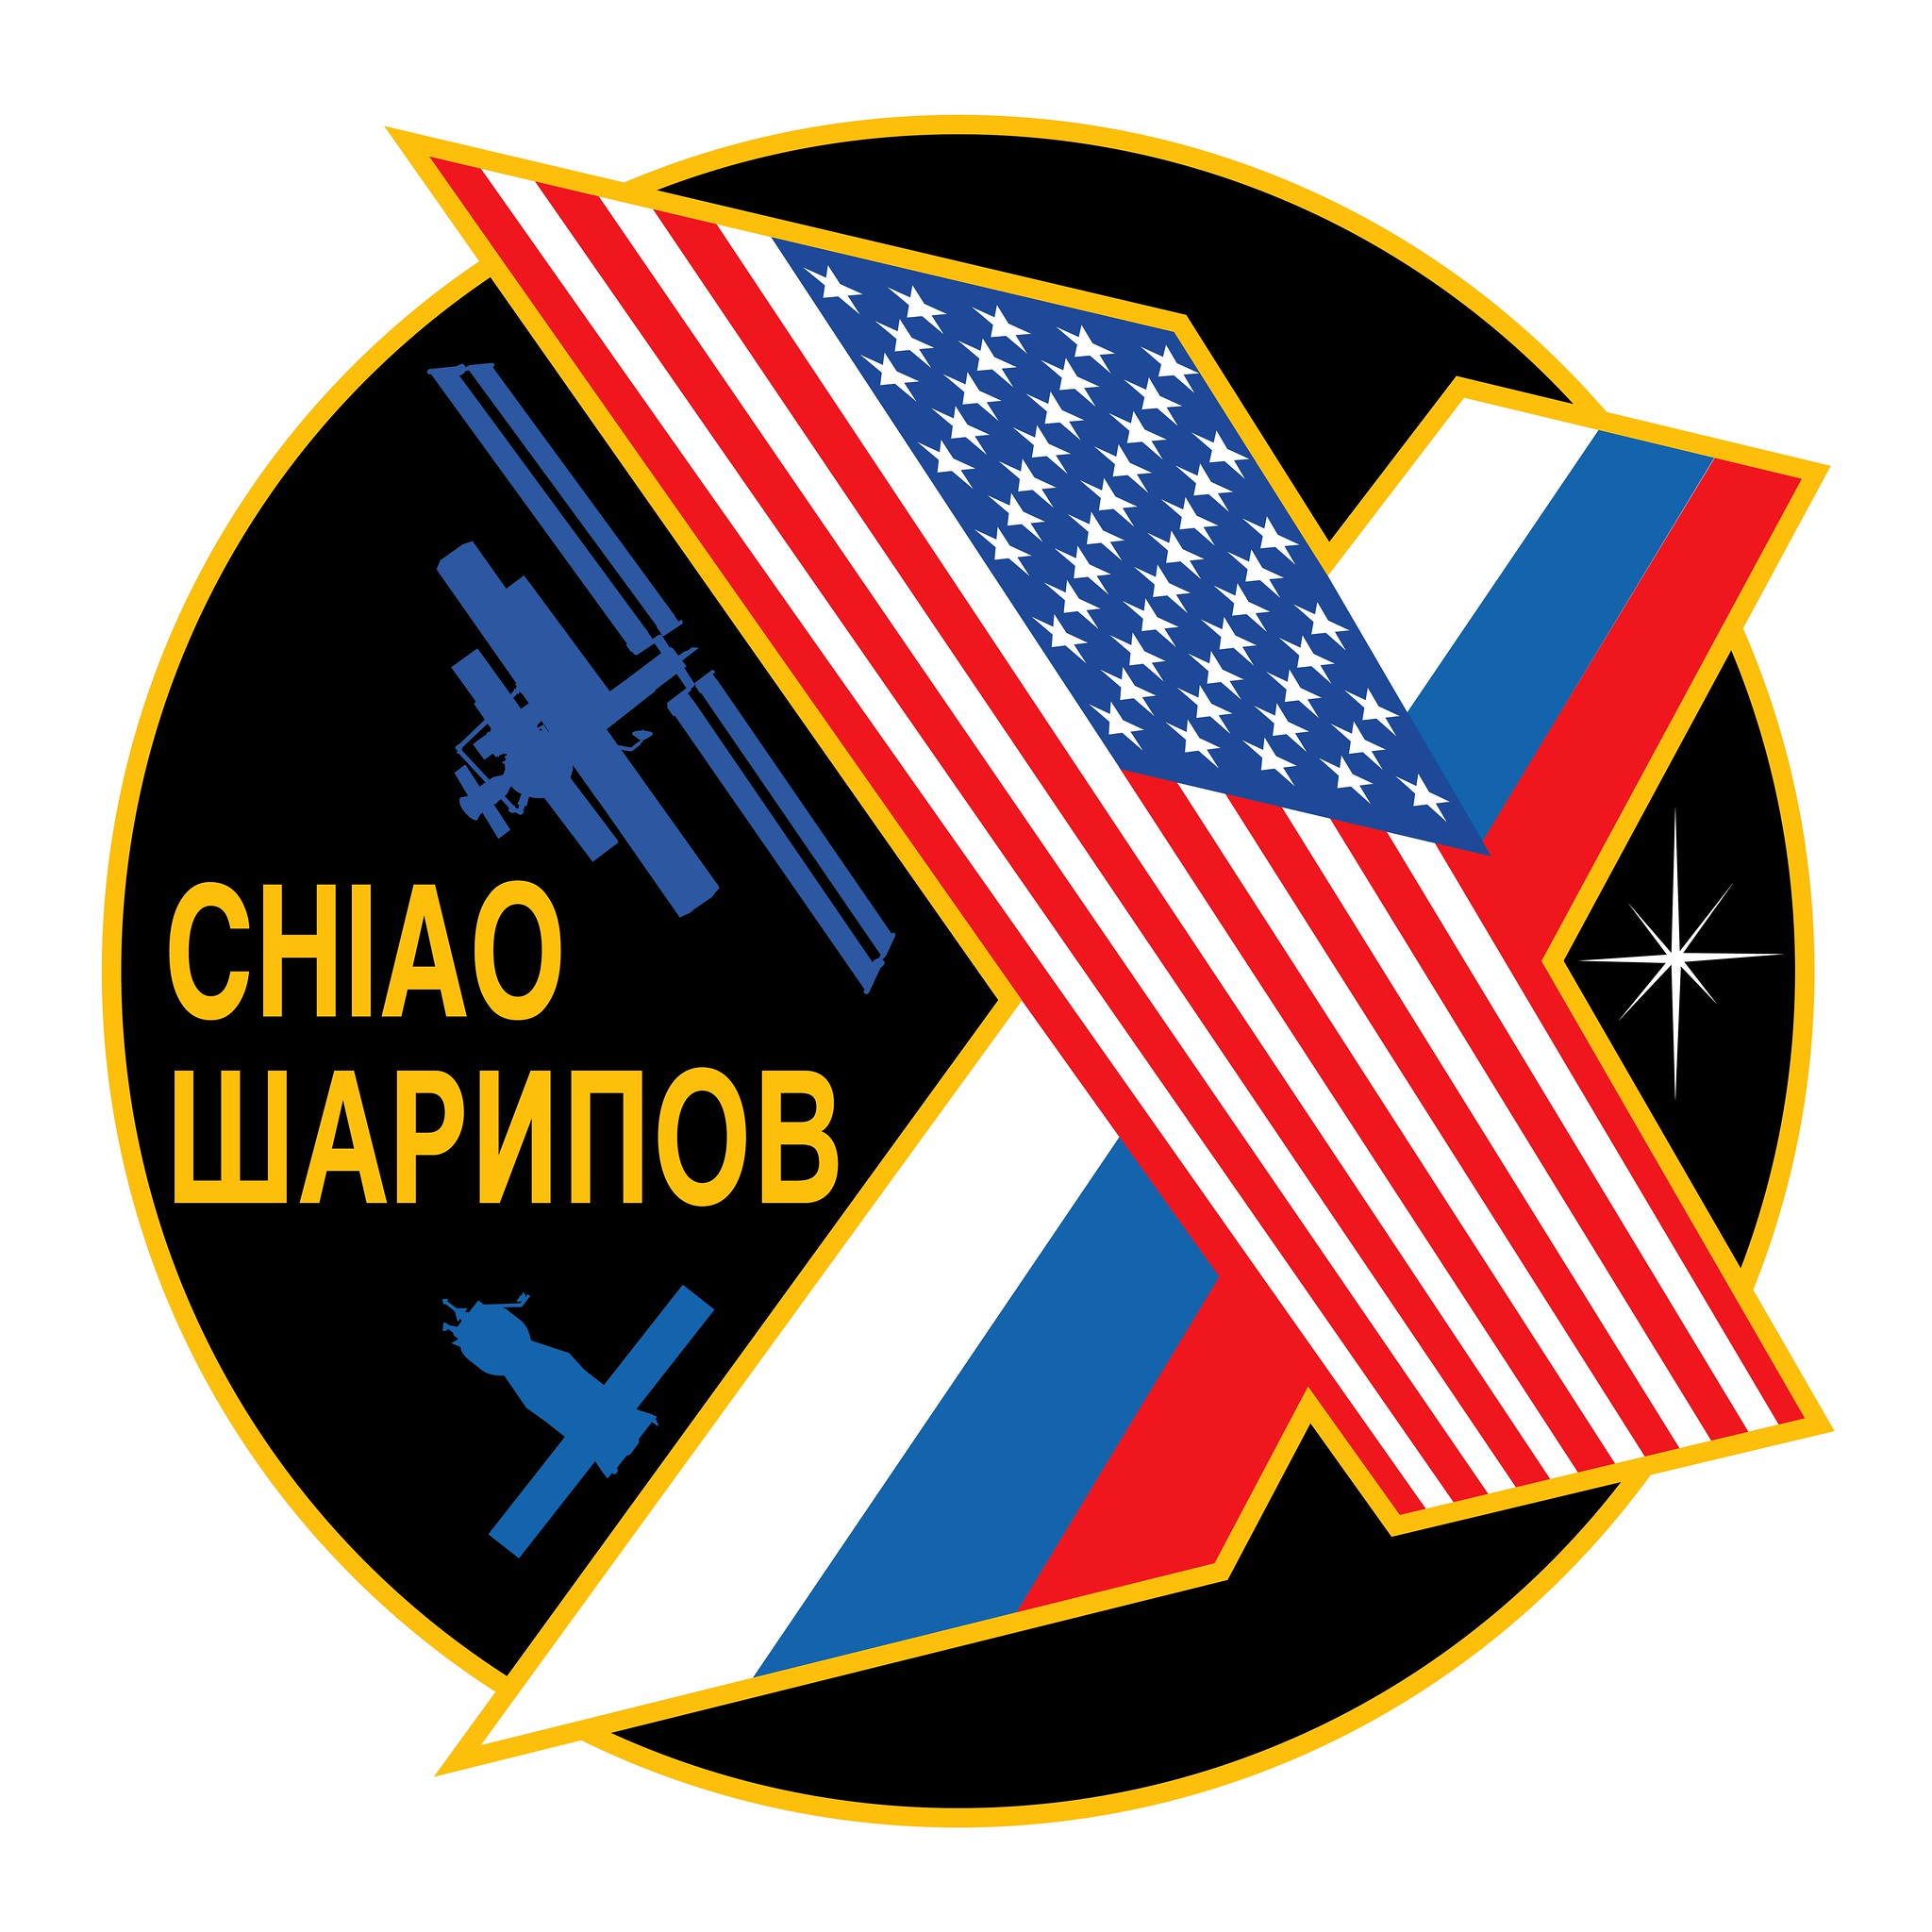 Expedition 10 crew insignia